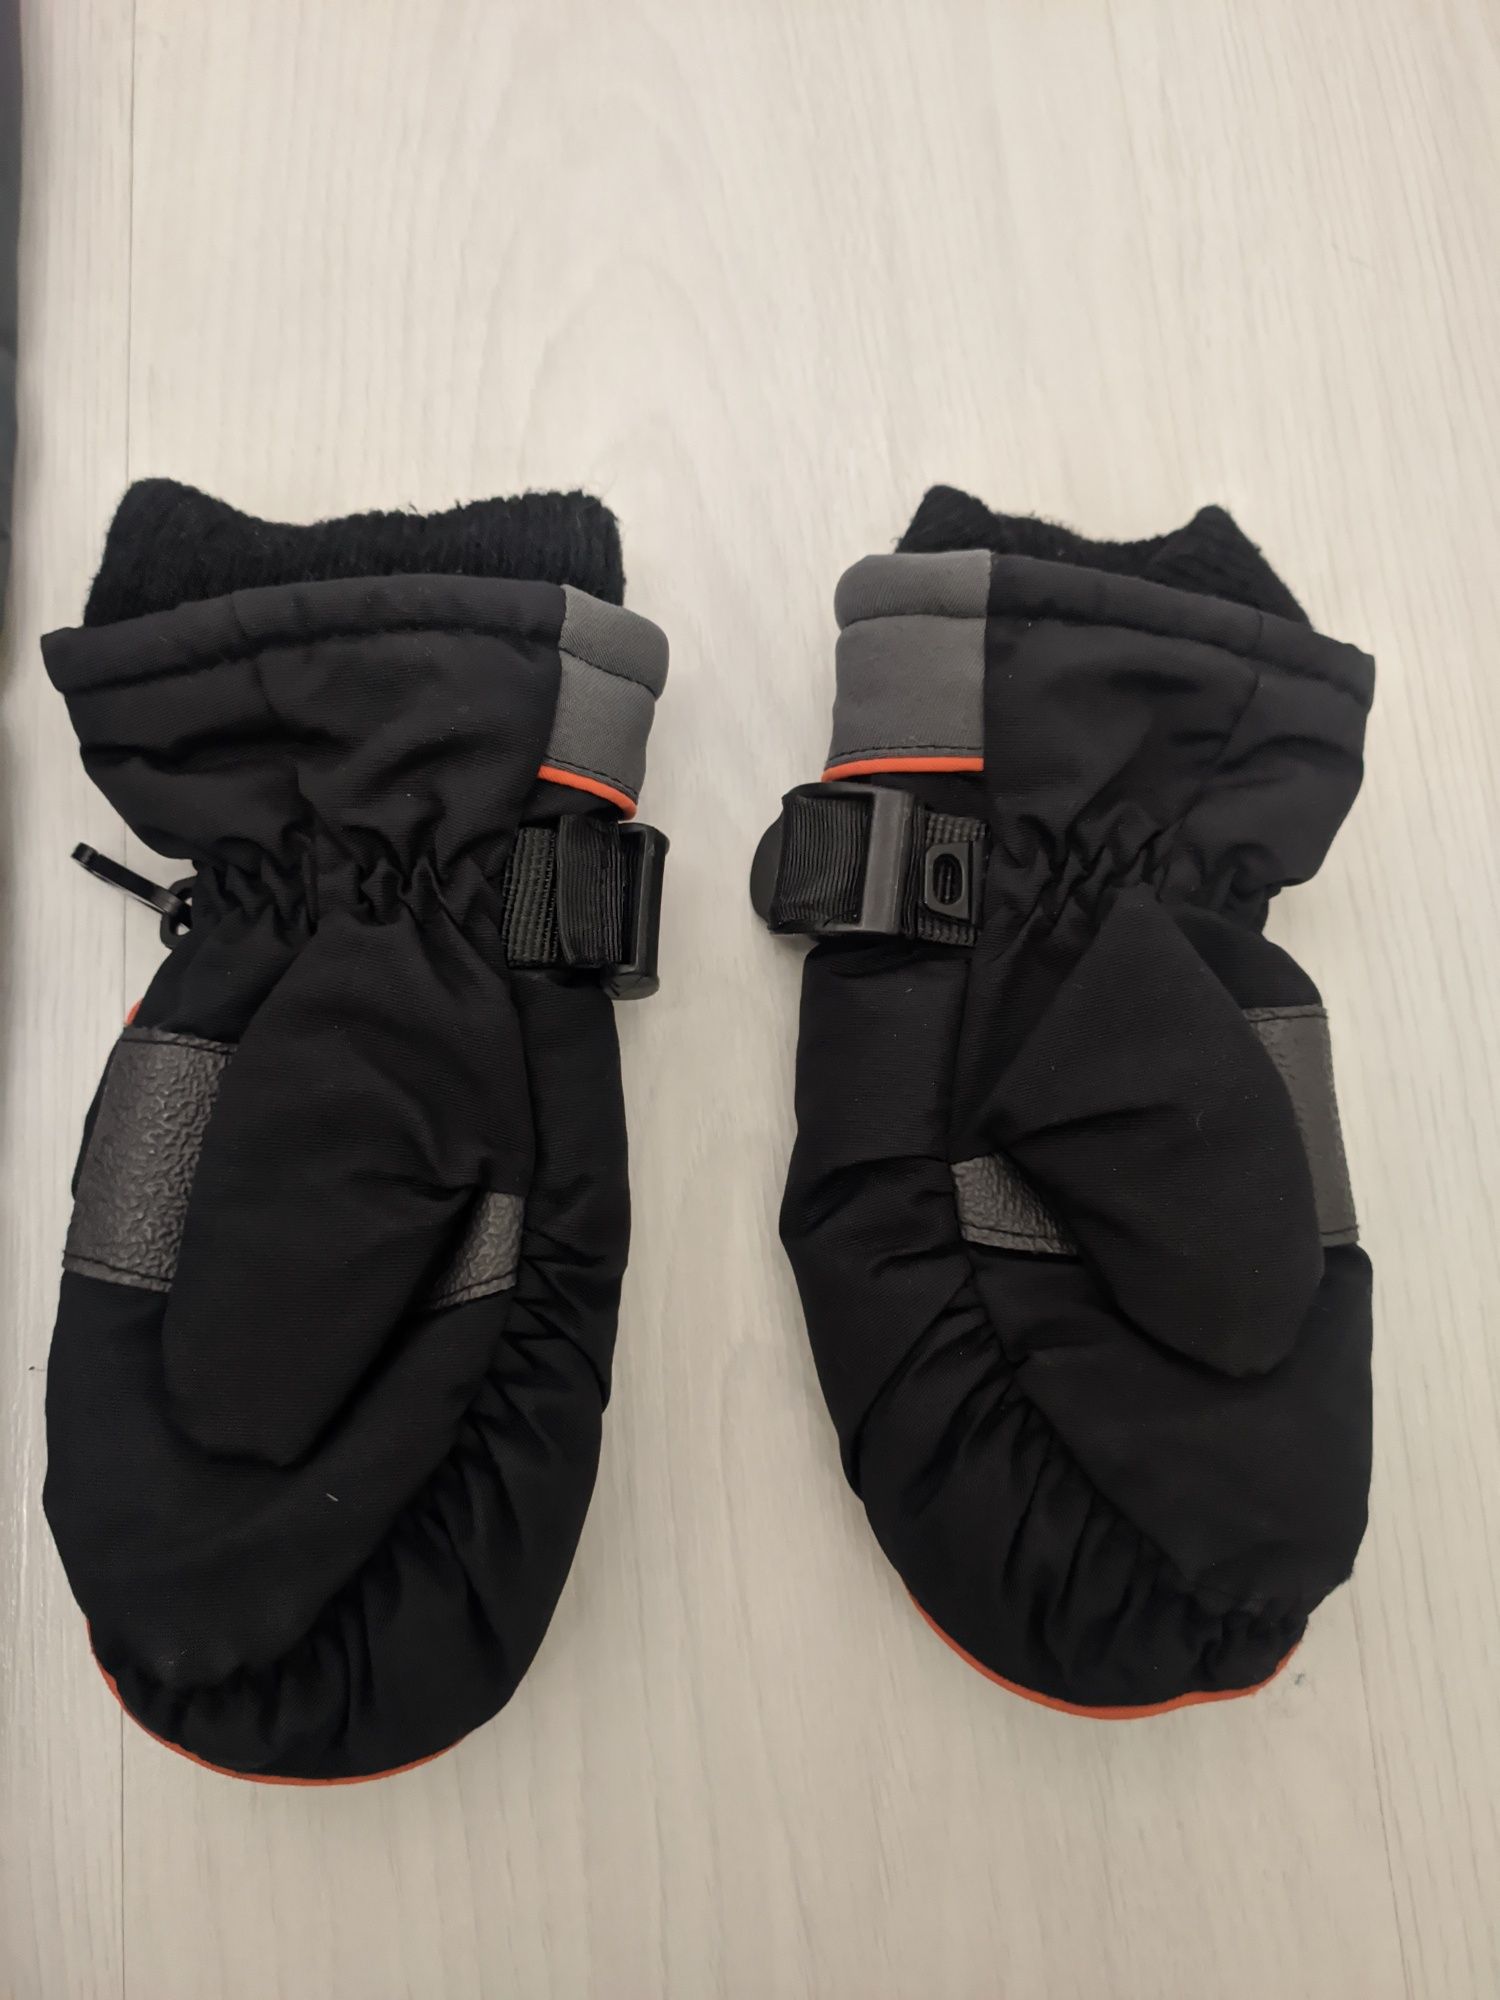 Zestaw zimowy szare spodnie ocieplane i rękawiczki narciarskie 110/116